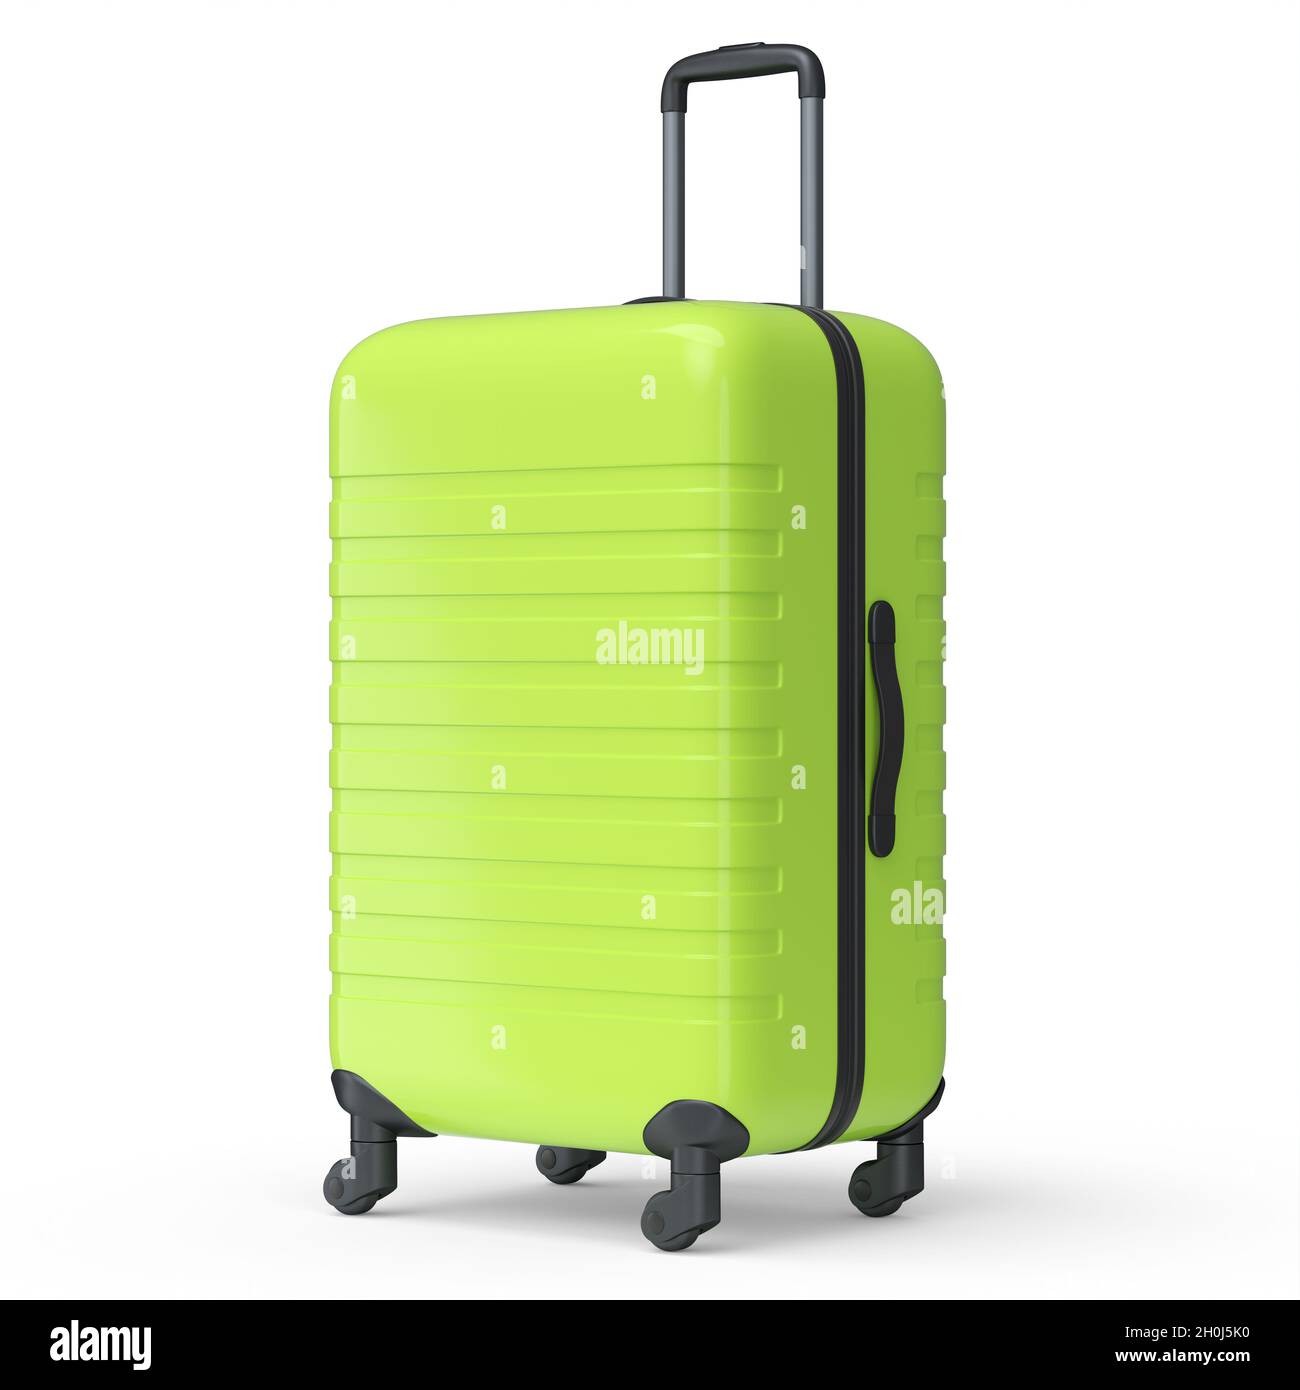 Valigia normale in policarbonato verde isolata su sfondo bianco.  rappresentazione 3d del concetto di viaggio di bagaglio o bagaglio Foto  stock - Alamy